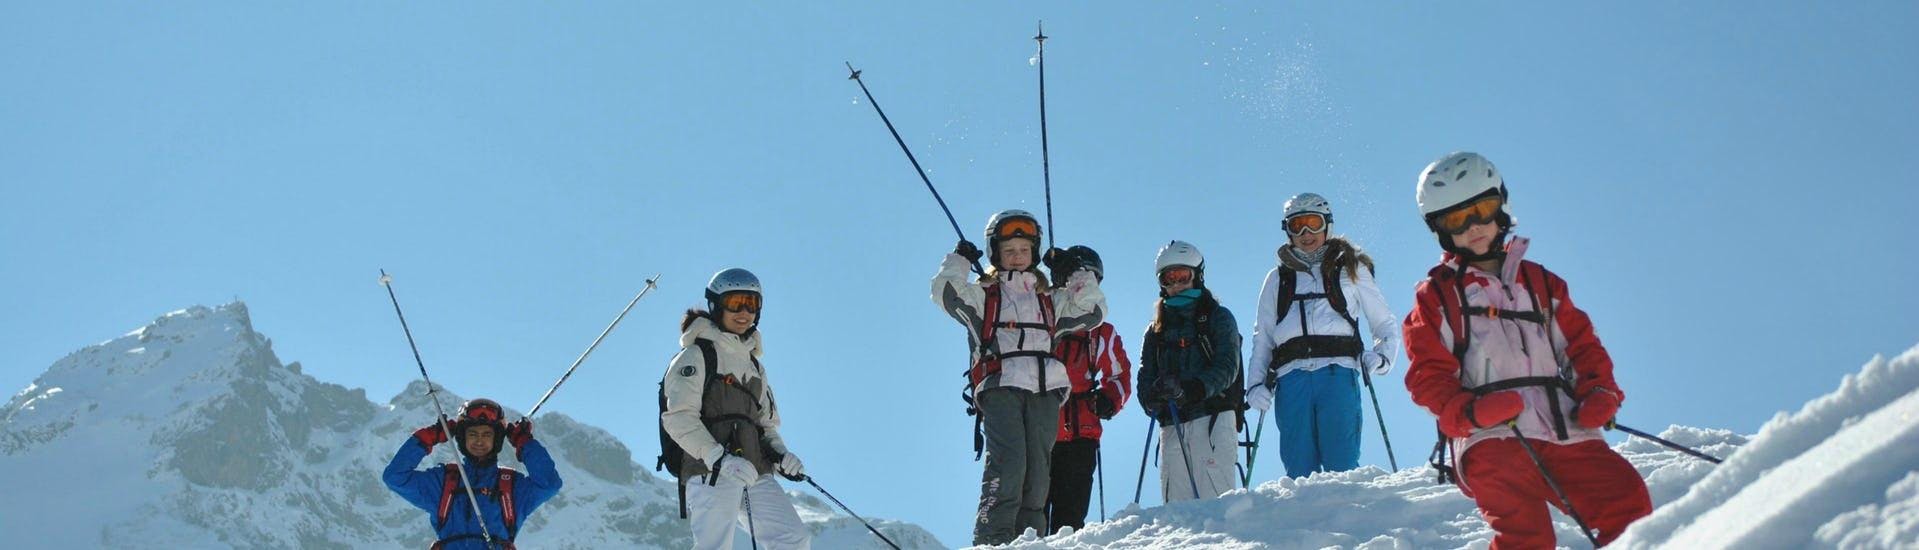 Skilessen voor kinderen "Bobo's Kinderclub" (4-14 jaar).